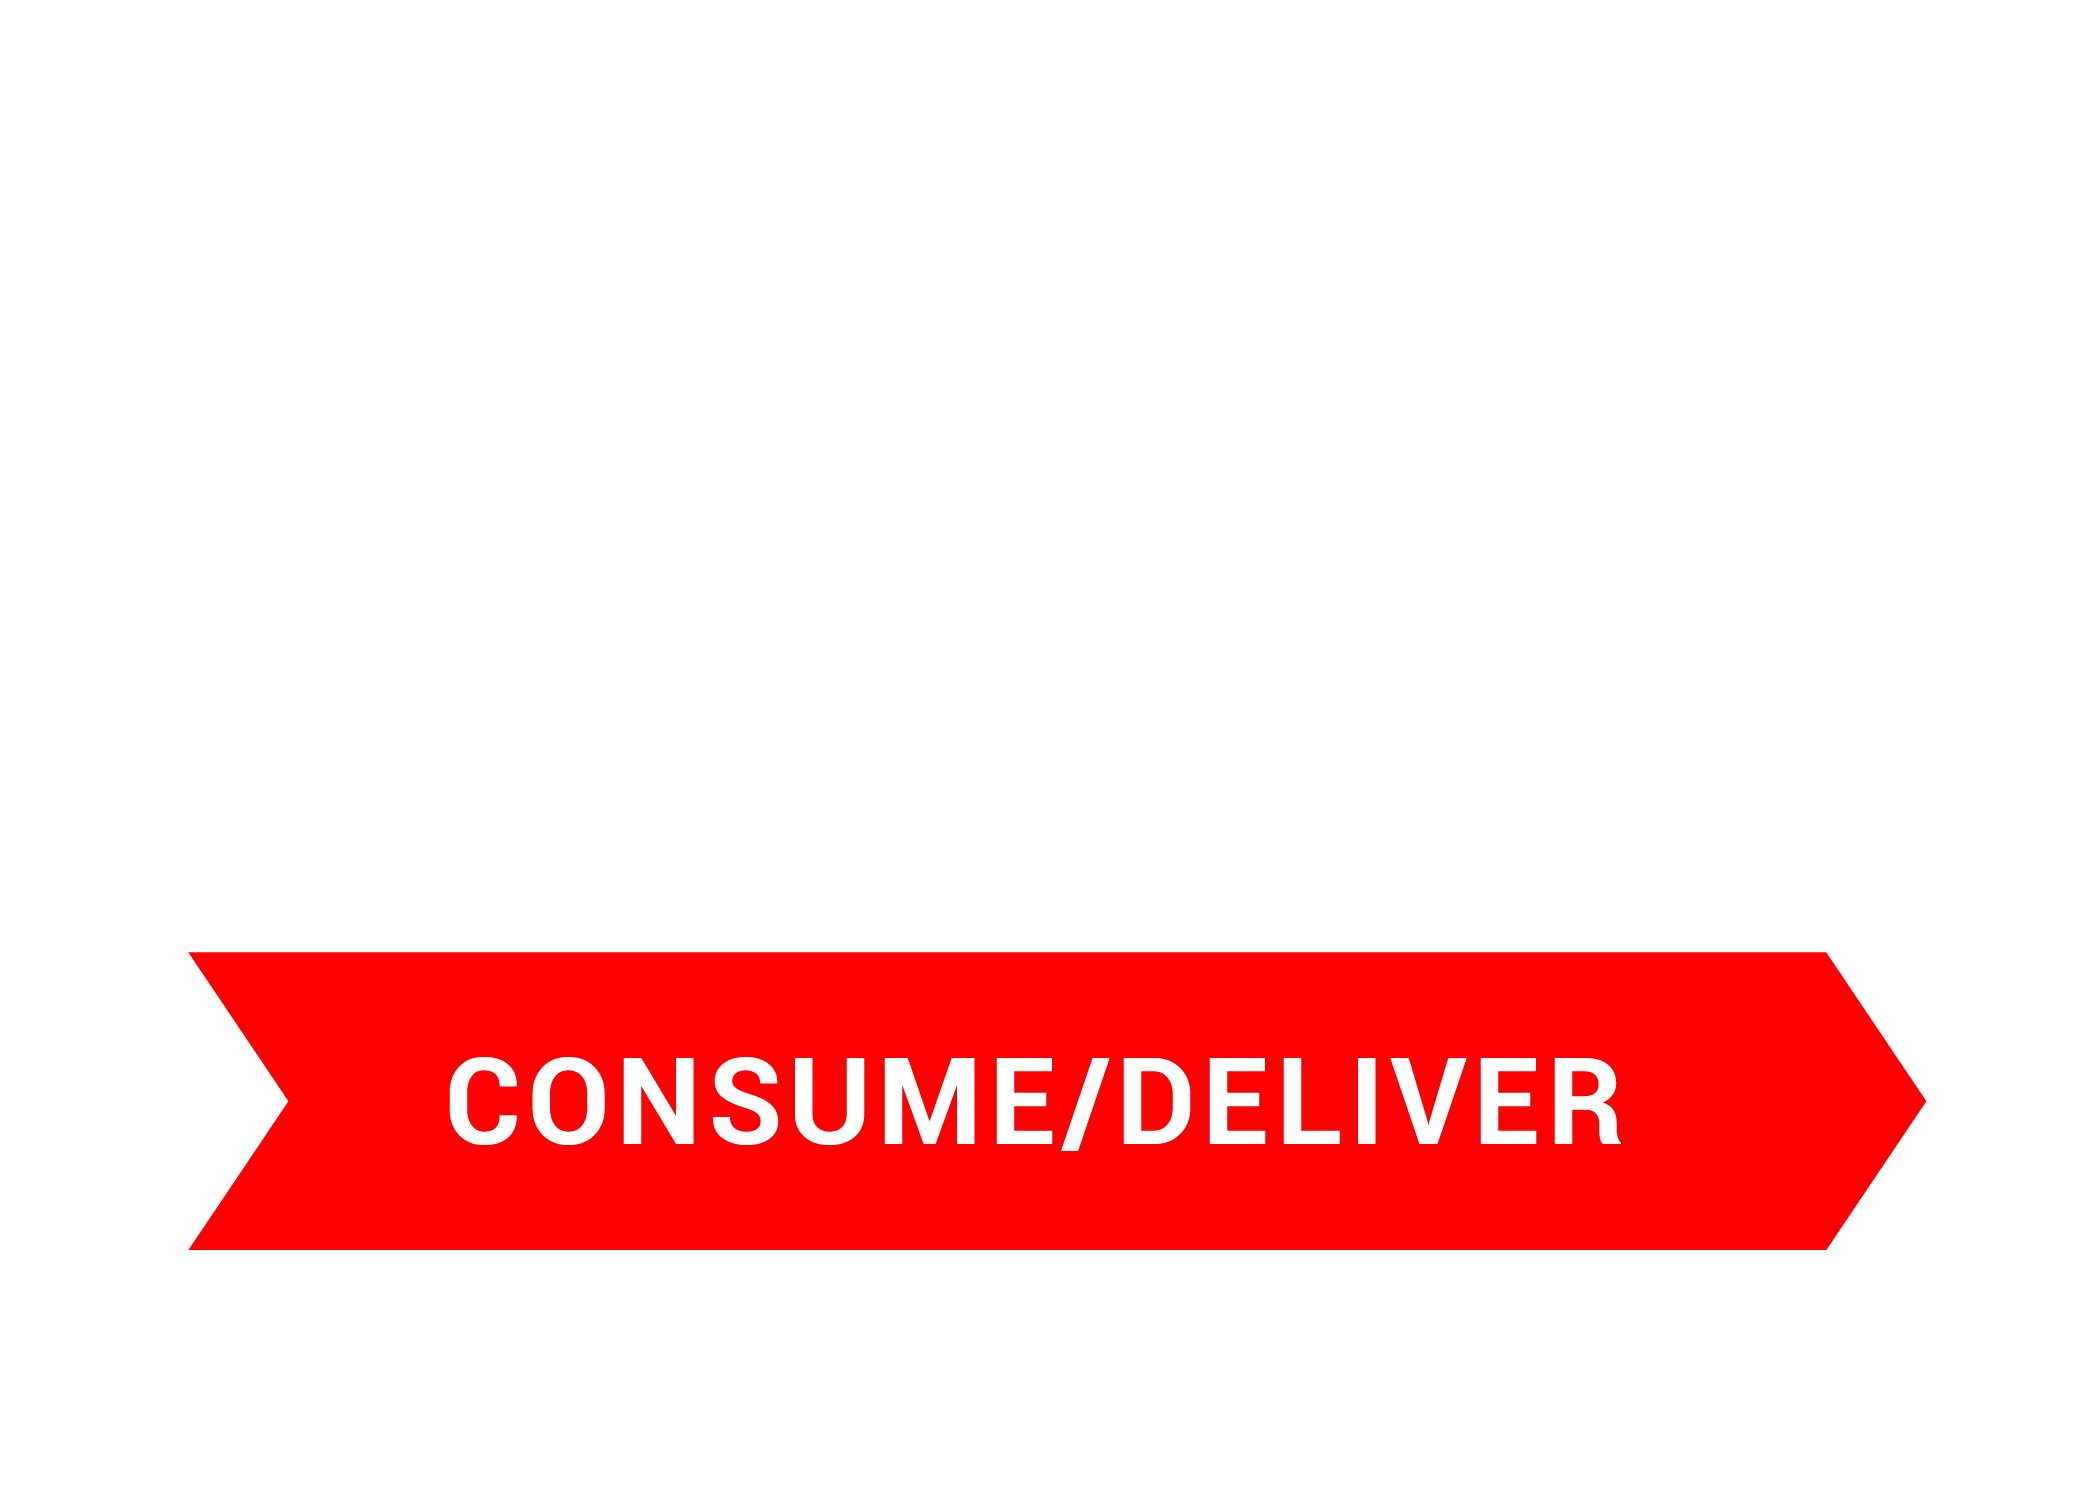 Consume/deliver icon